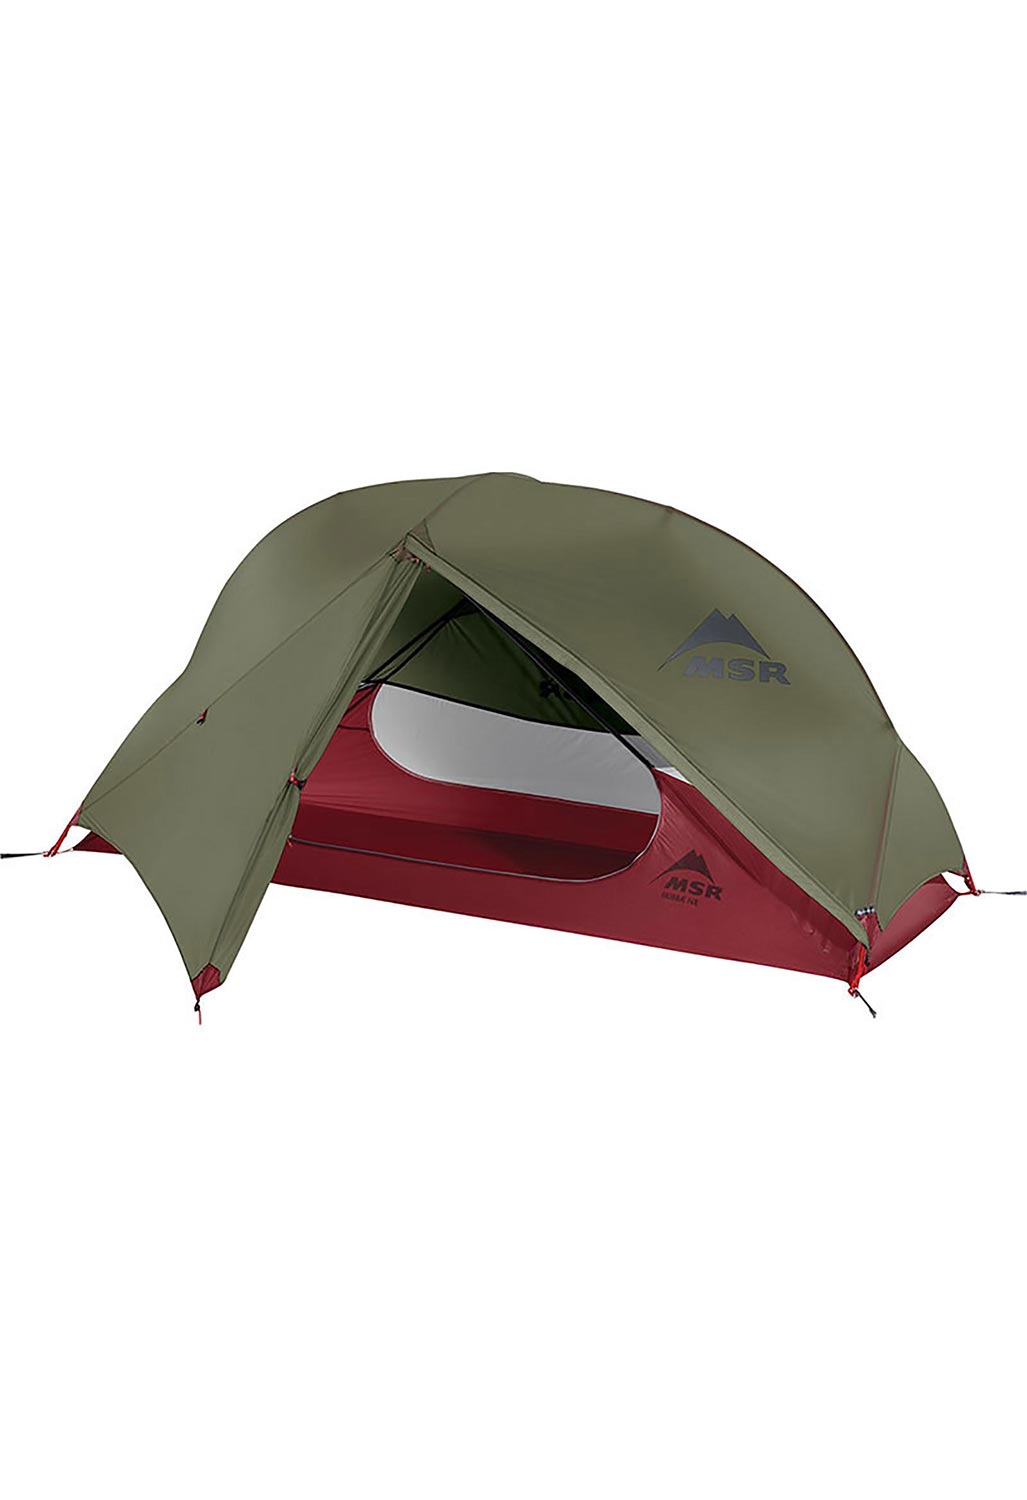 MSR Hubba NX 1P Tent 0